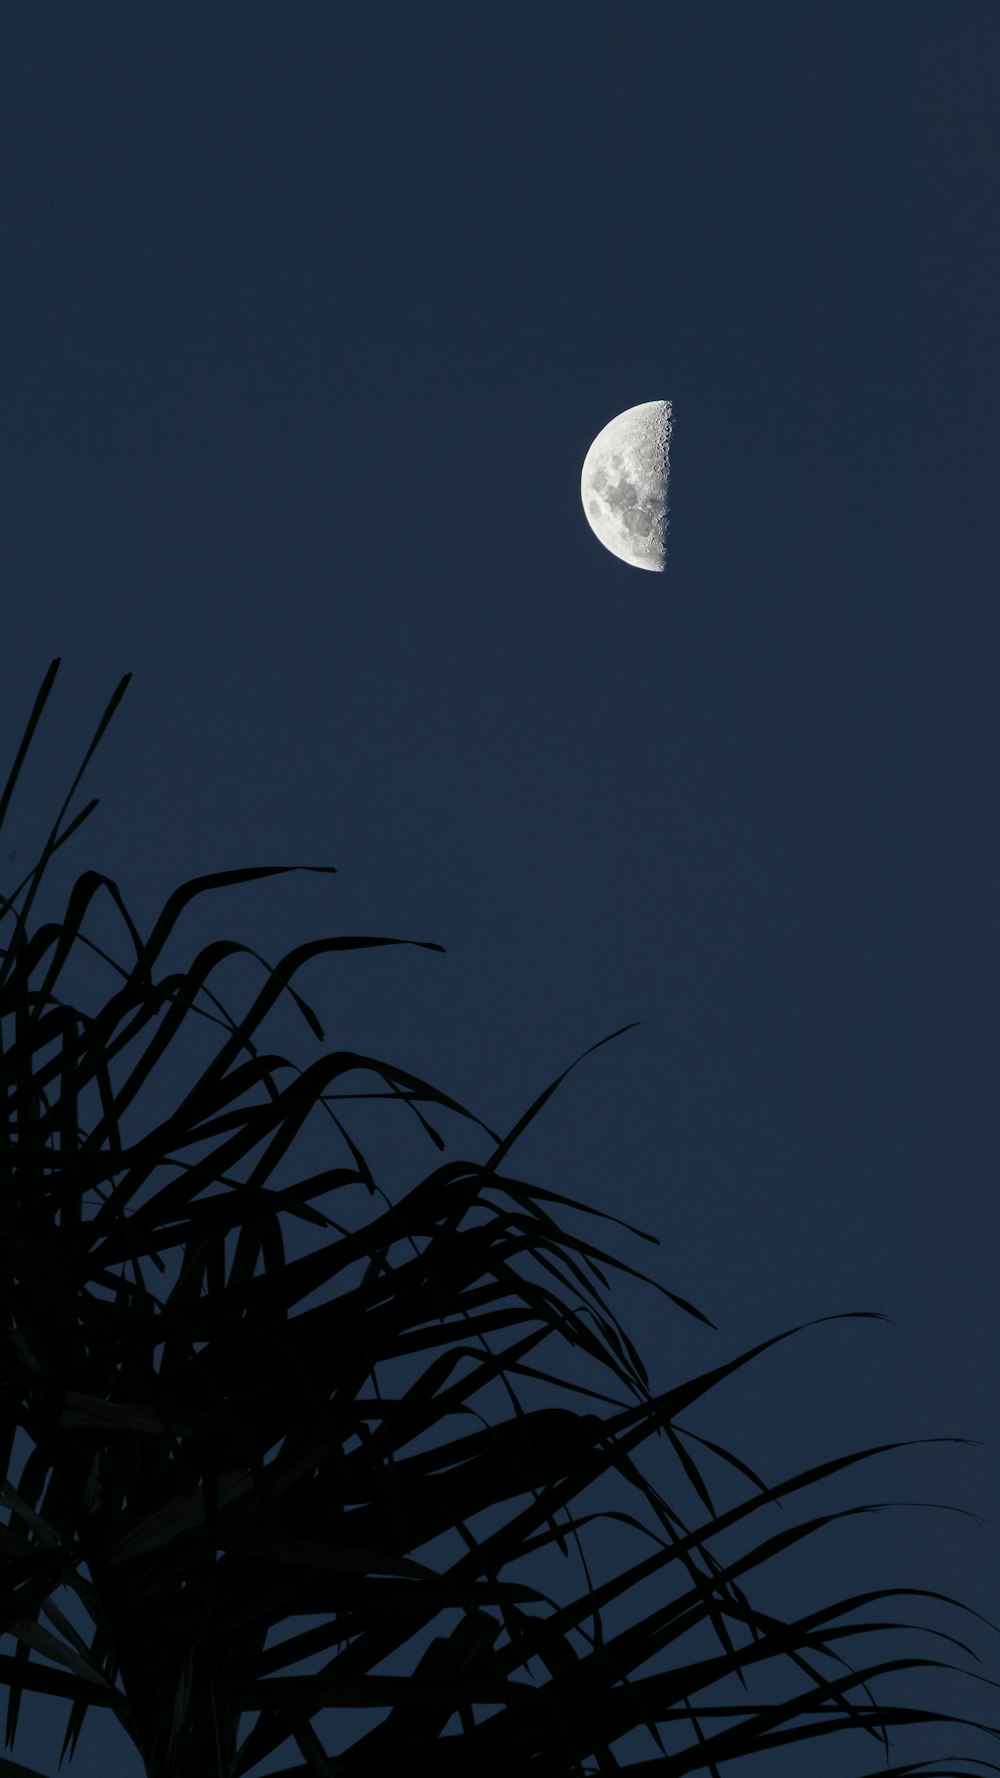 La luna se ve a través de las ramas de una palmera